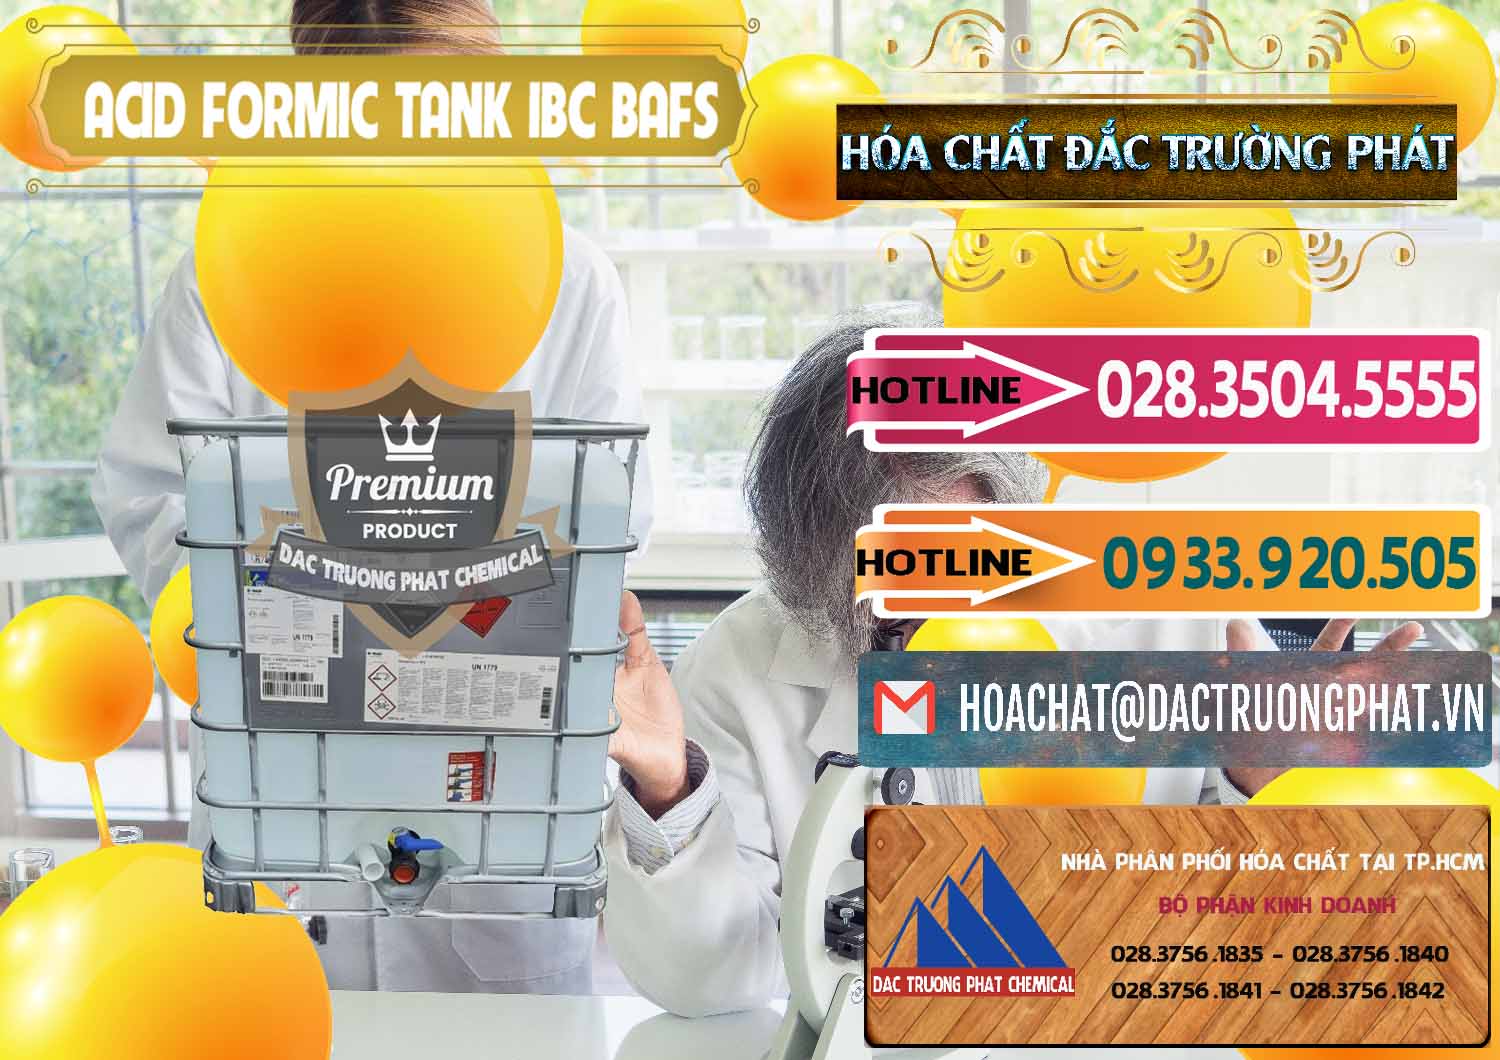 Bán và cung cấp Acid Formic - Axit Formic Tank - Bồn IBC BASF Đức - 0366 - Cty kinh doanh và phân phối hóa chất tại TP.HCM - dactruongphat.vn